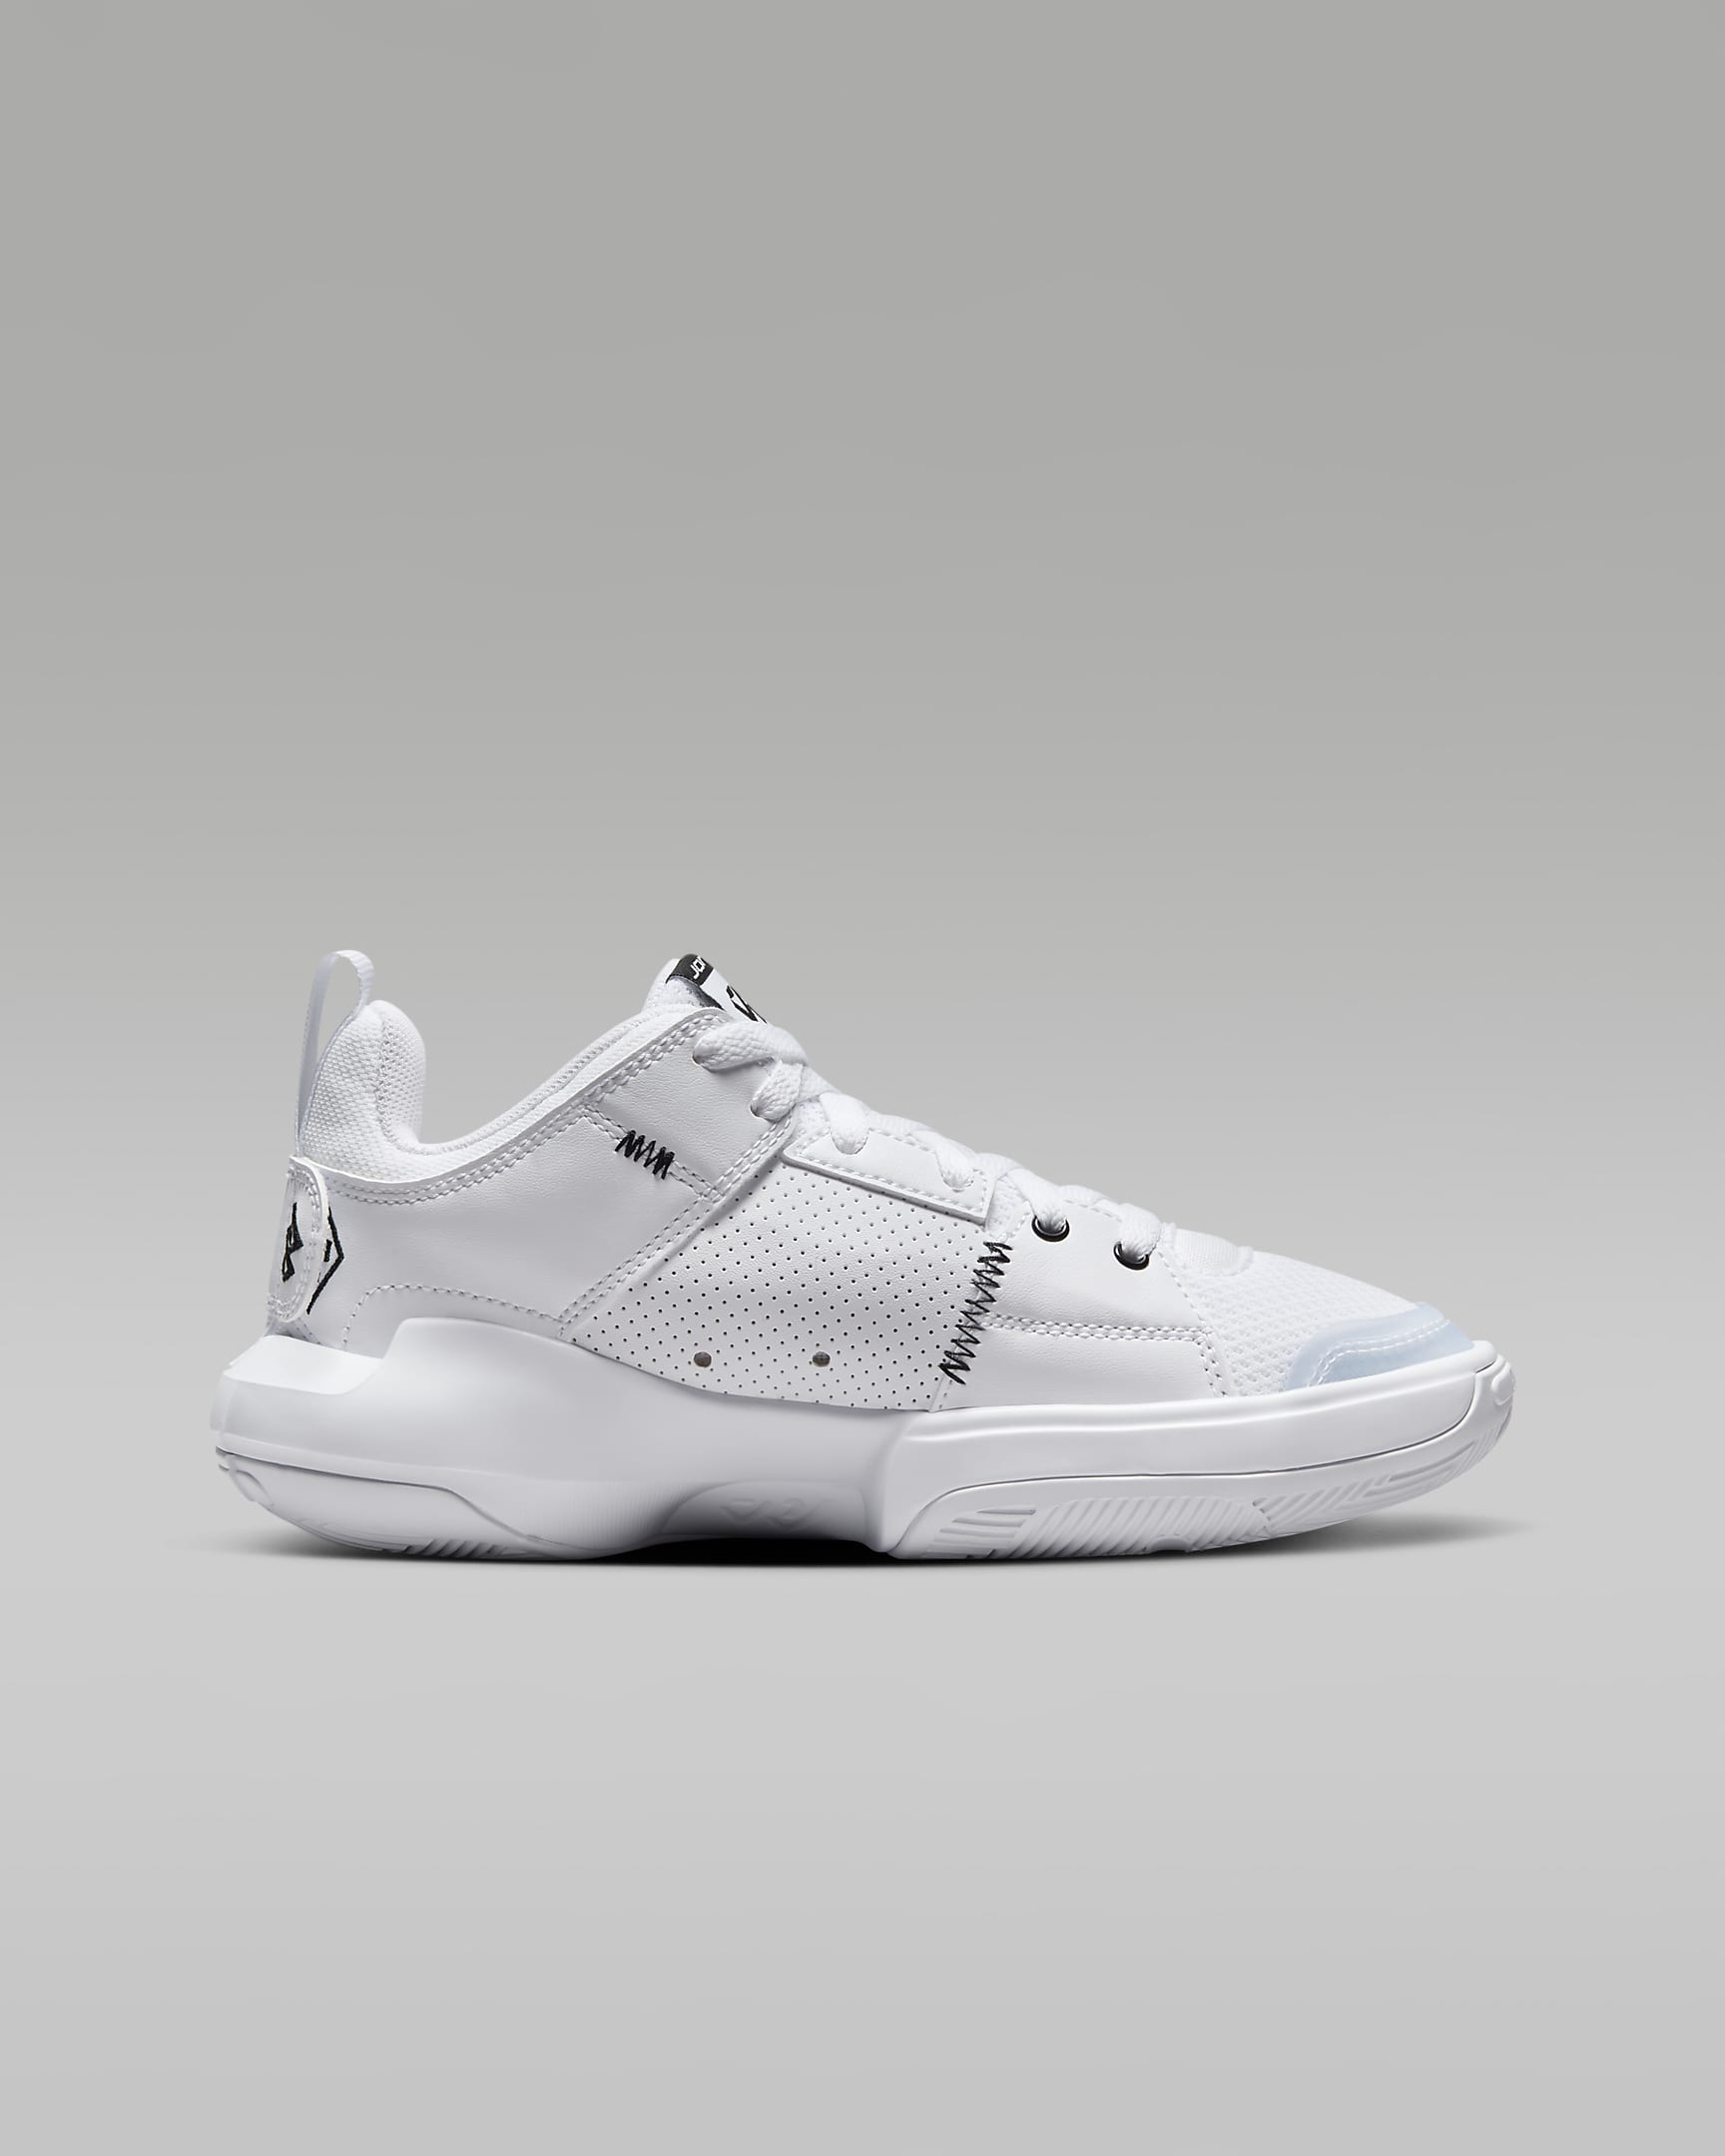 Jordan One Take 5 Older Kids' Shoes - White/Arctic Punch/Black